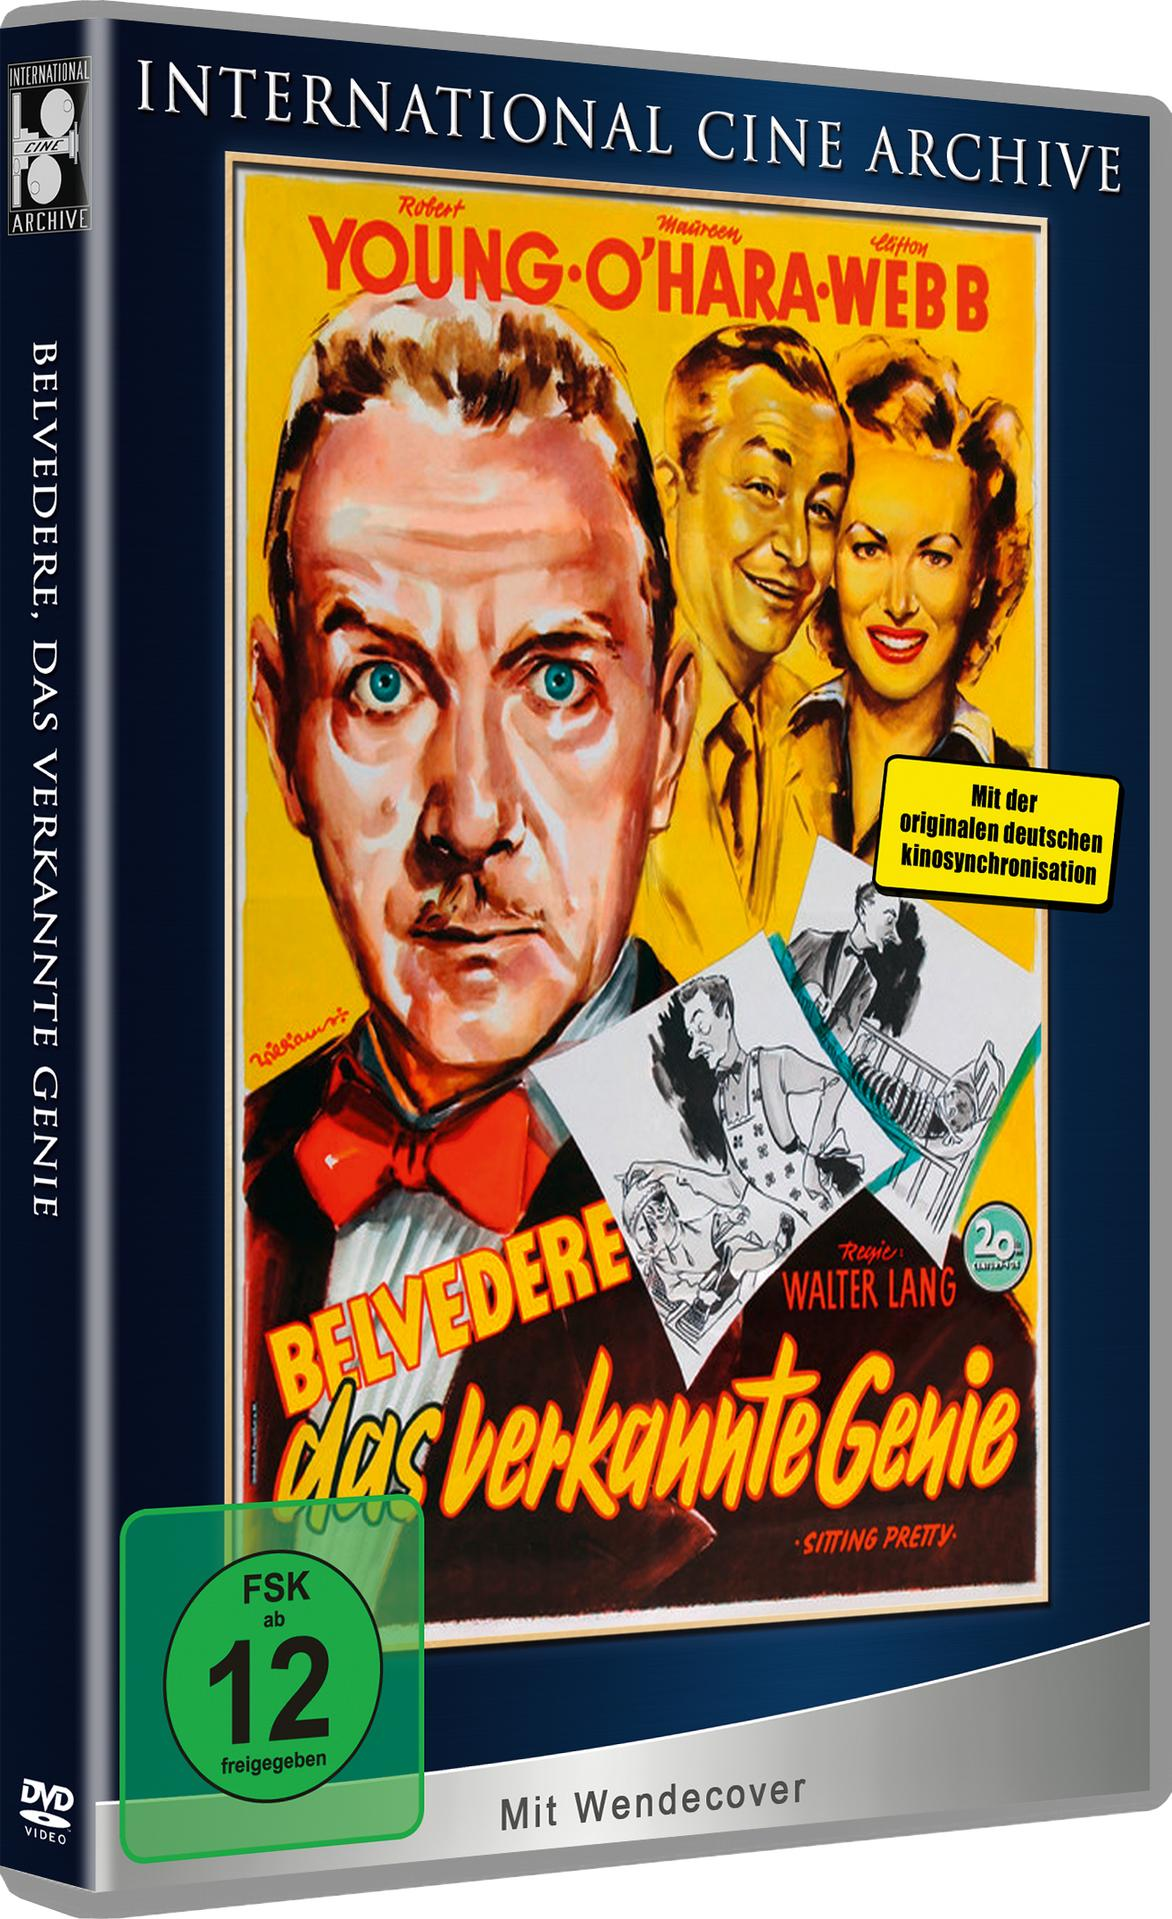 Belvedere, das verkannte DVD Genie